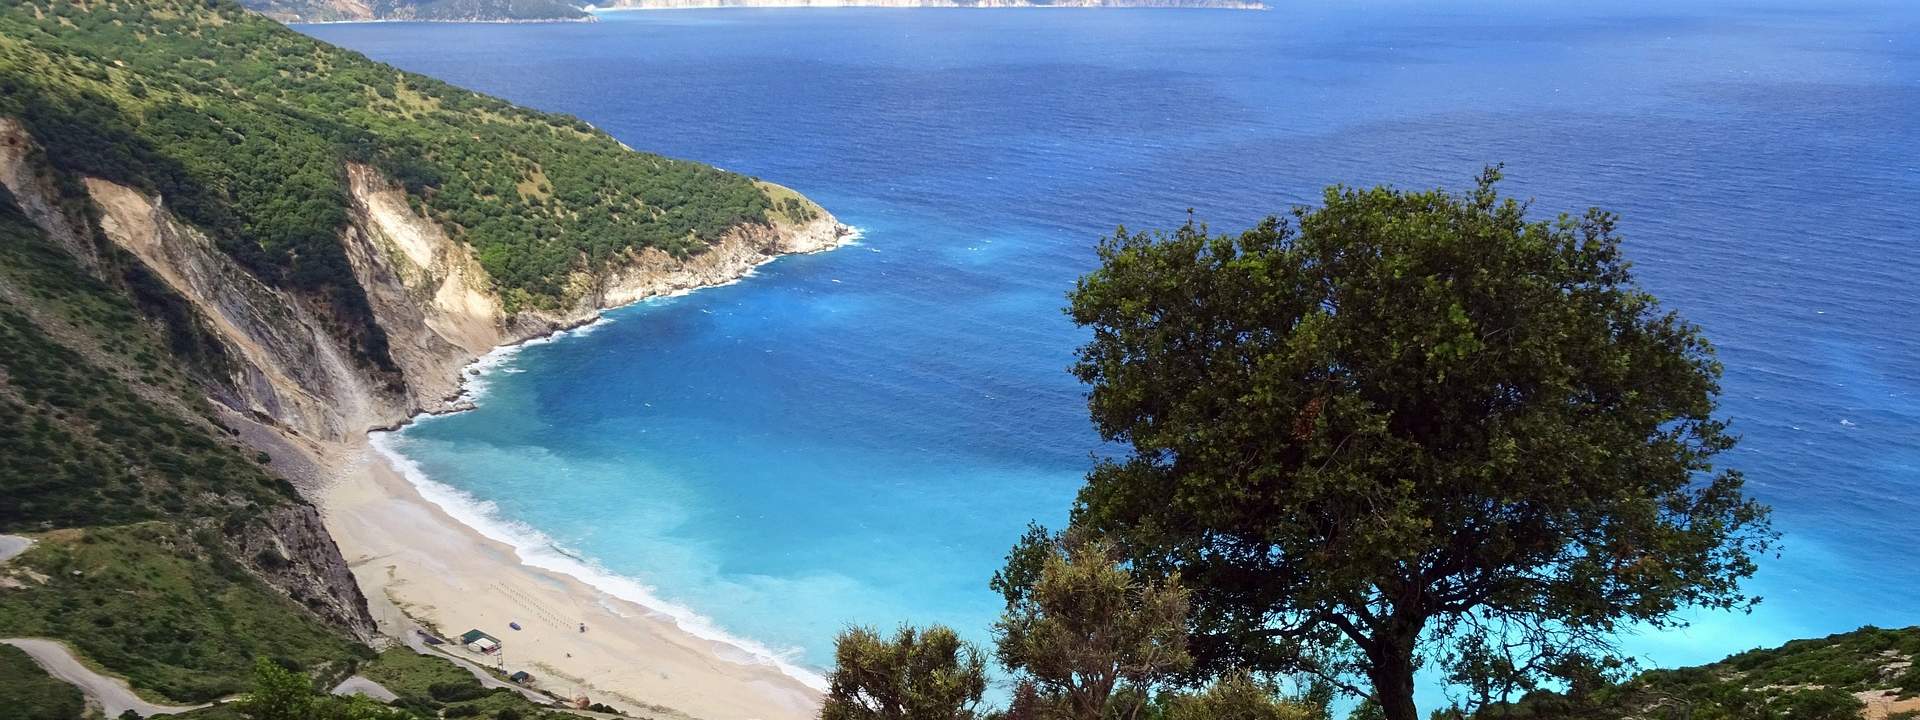 La Grecia in barca a vela: alla scoperta delle isole ioniche